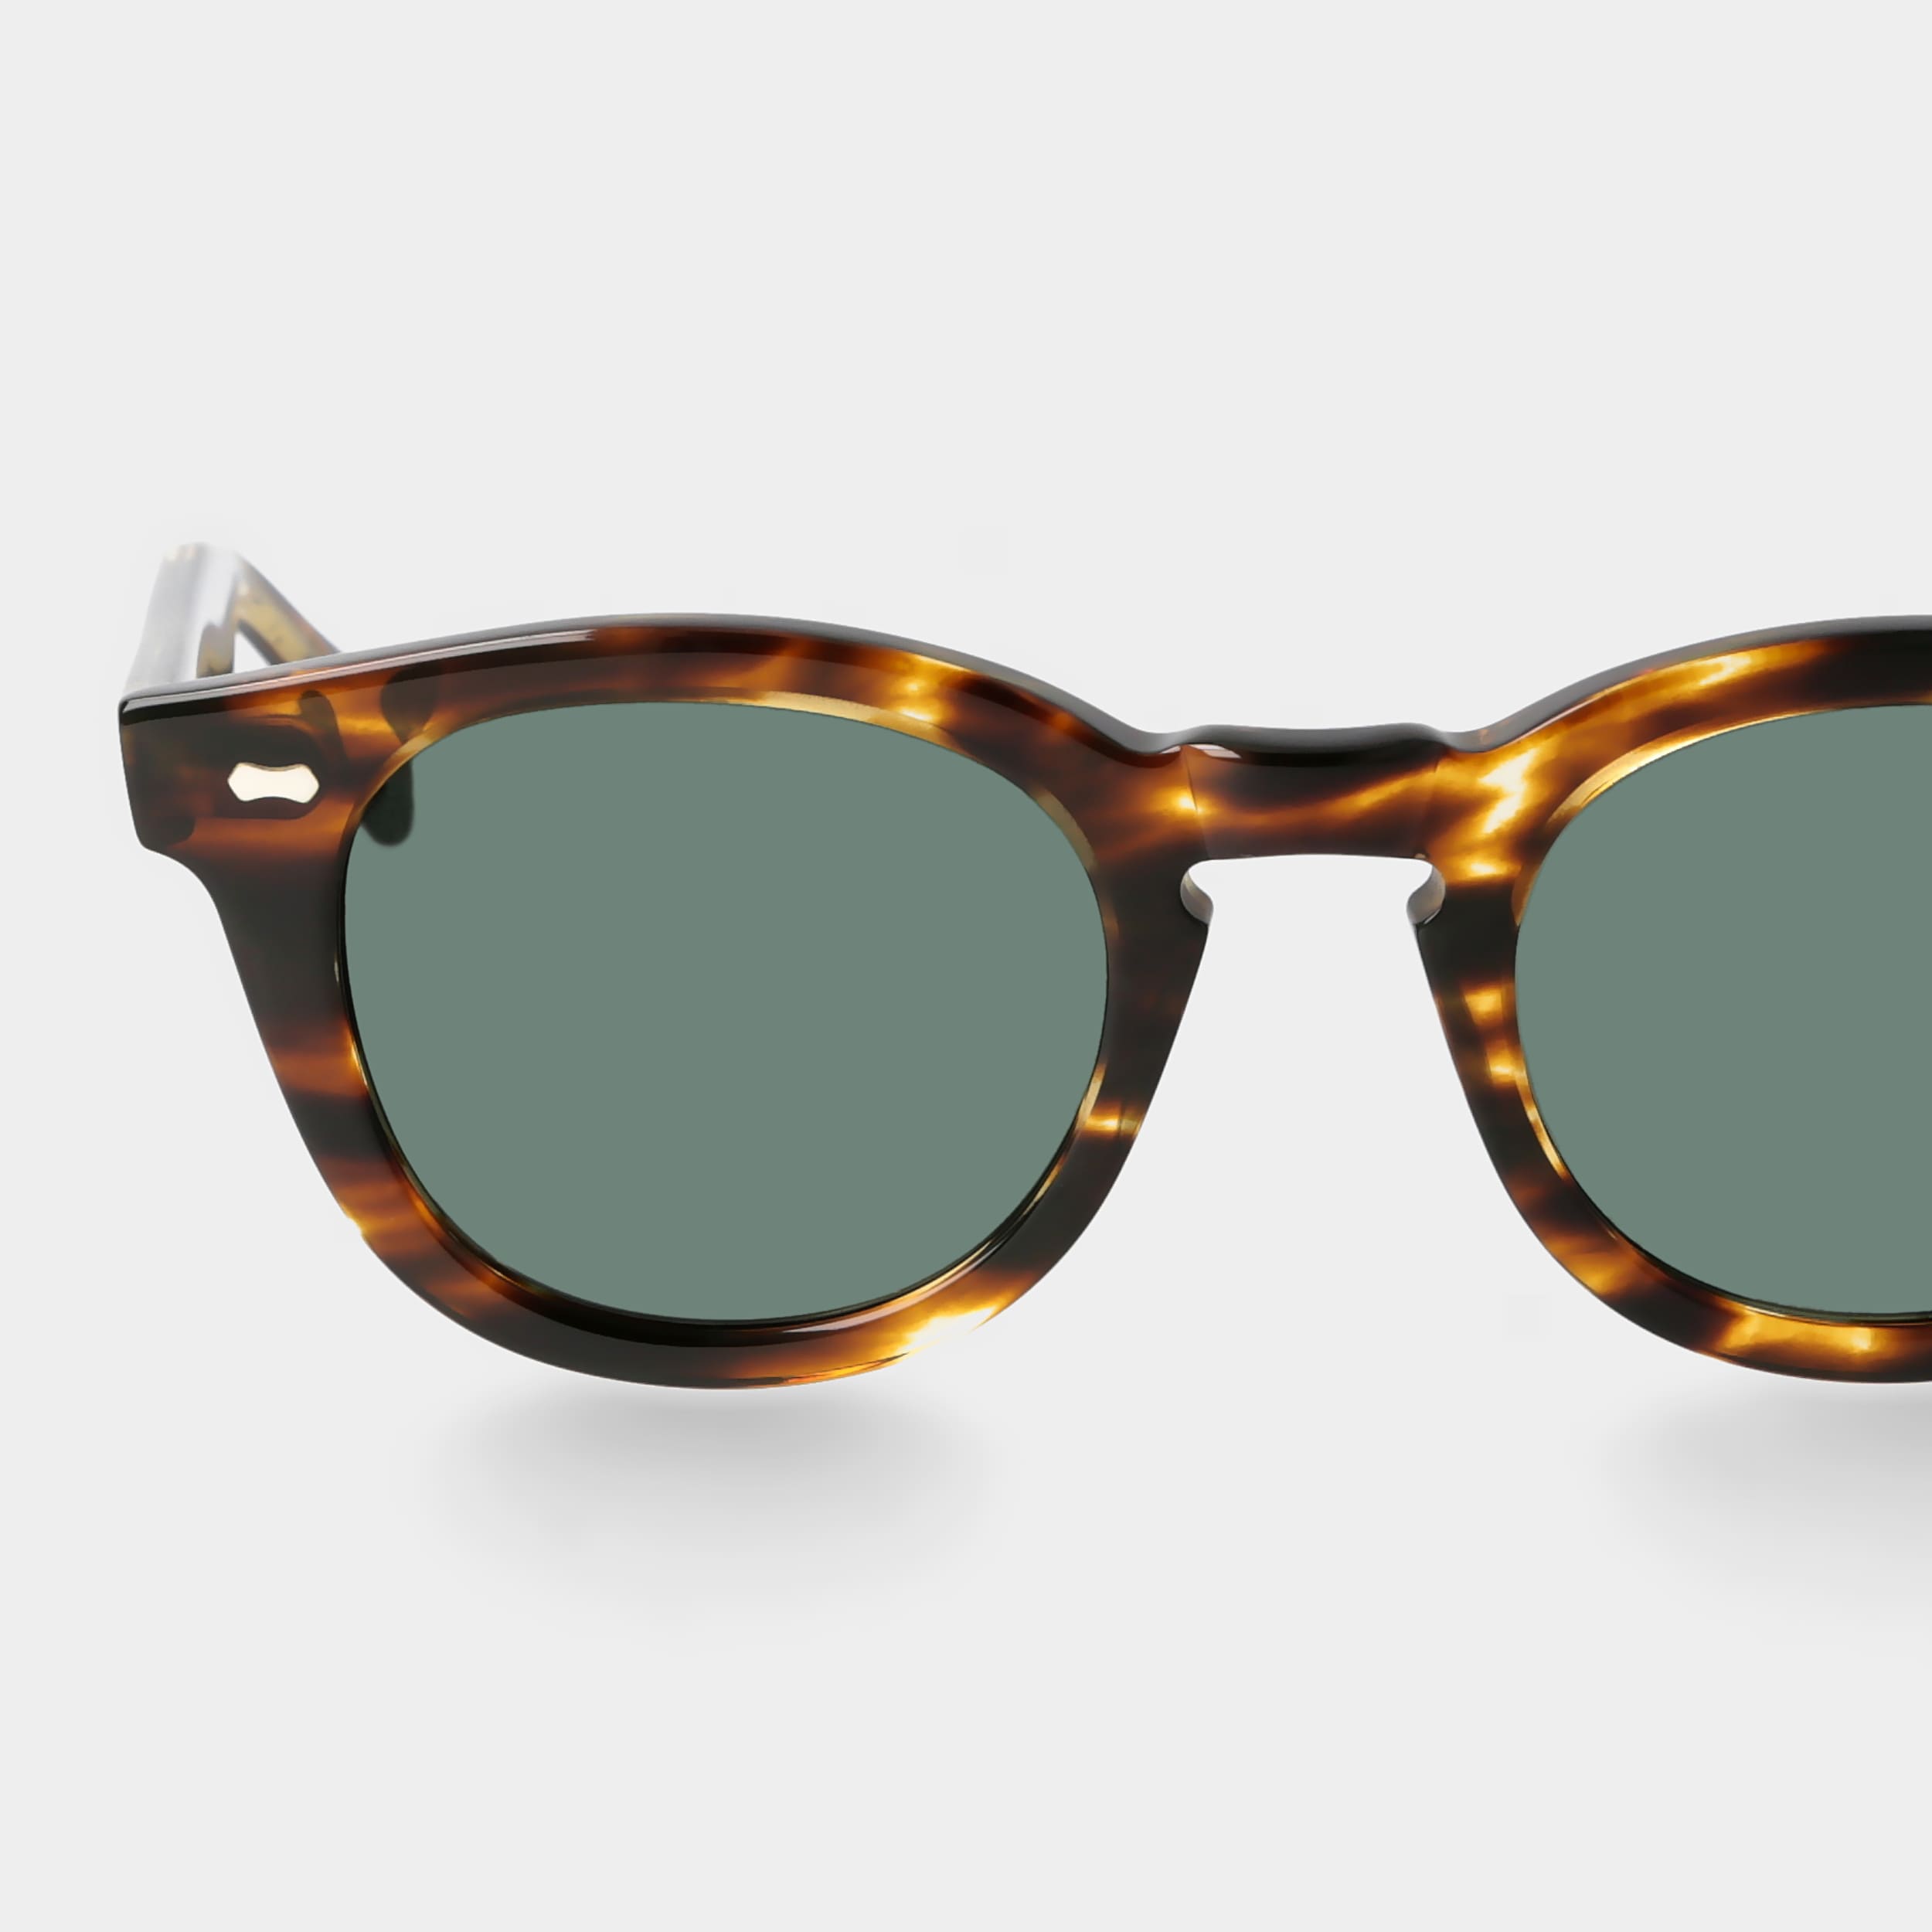 sunglasses-donegal-light-havana-bottle-green-tbd-eyewear-lens